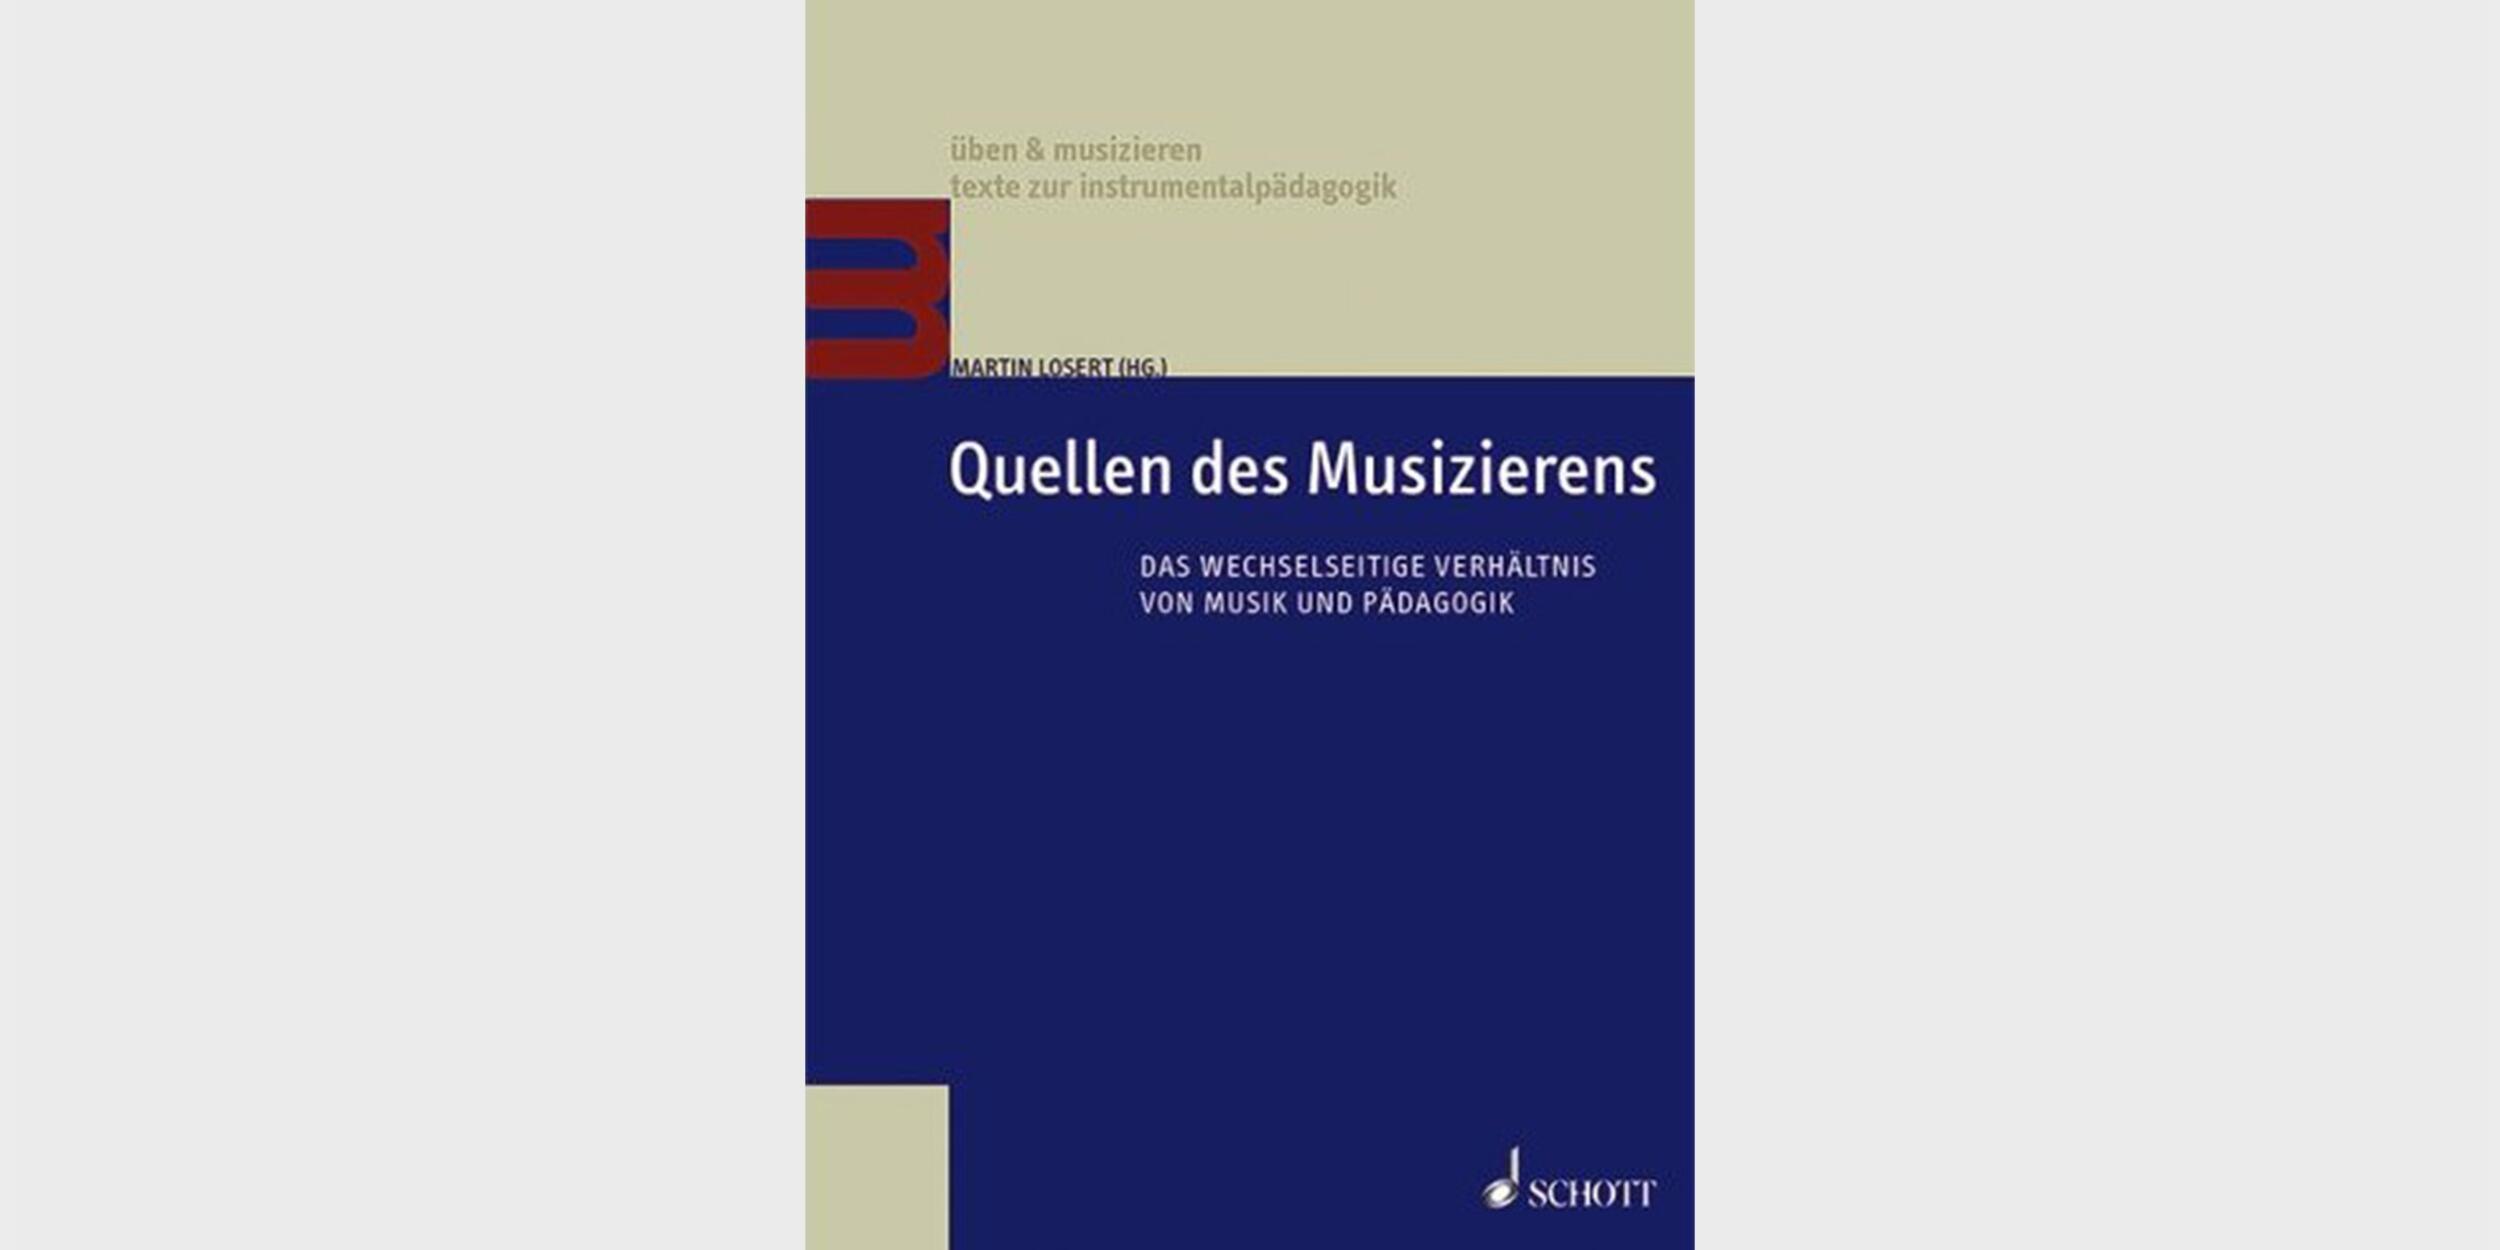 Quellen des Musizierens. Das wechselseitige Verhältnis von Musik und Pädagogik